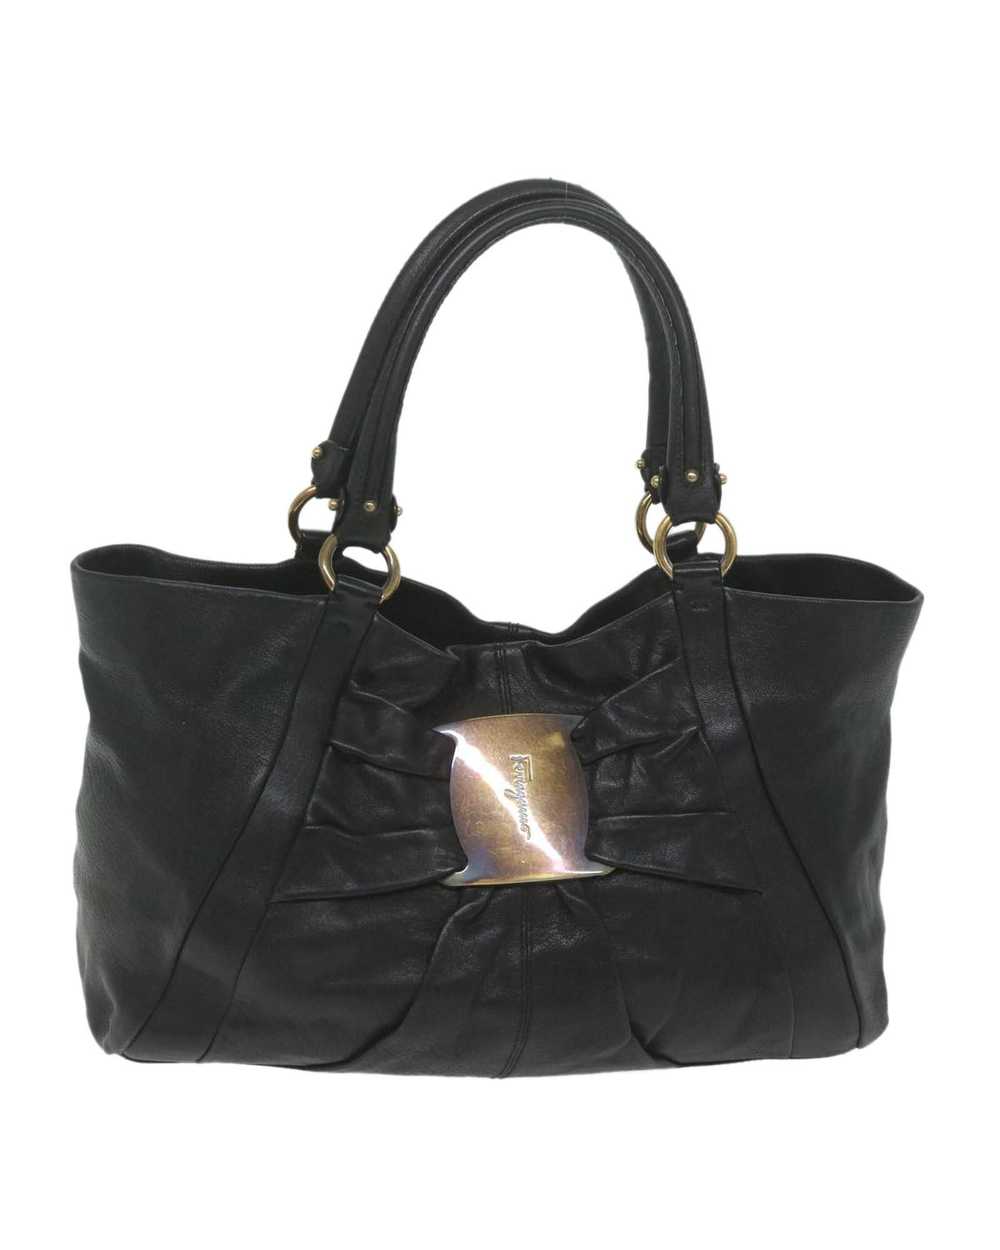 Salvatore Ferragamo Black Leather Tote Bag by Ita… - image 2